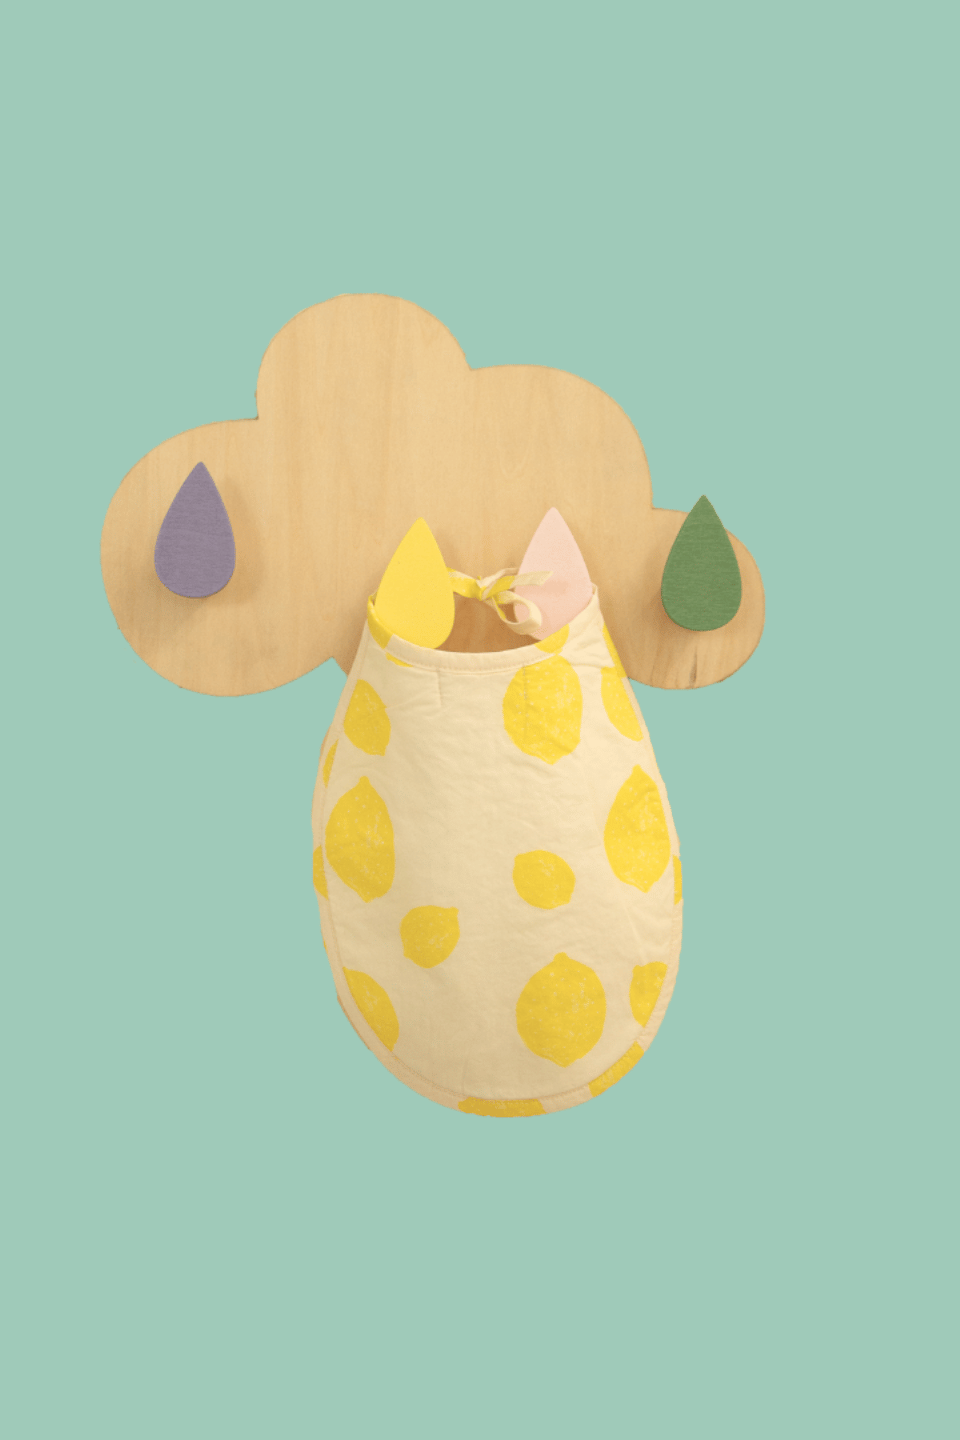 Bavoir pour bébé au motif Lemon accroché à un porte-manteau coloré en forme de nuage, bavoir en coton de la capsule bébé naissance Baby Care